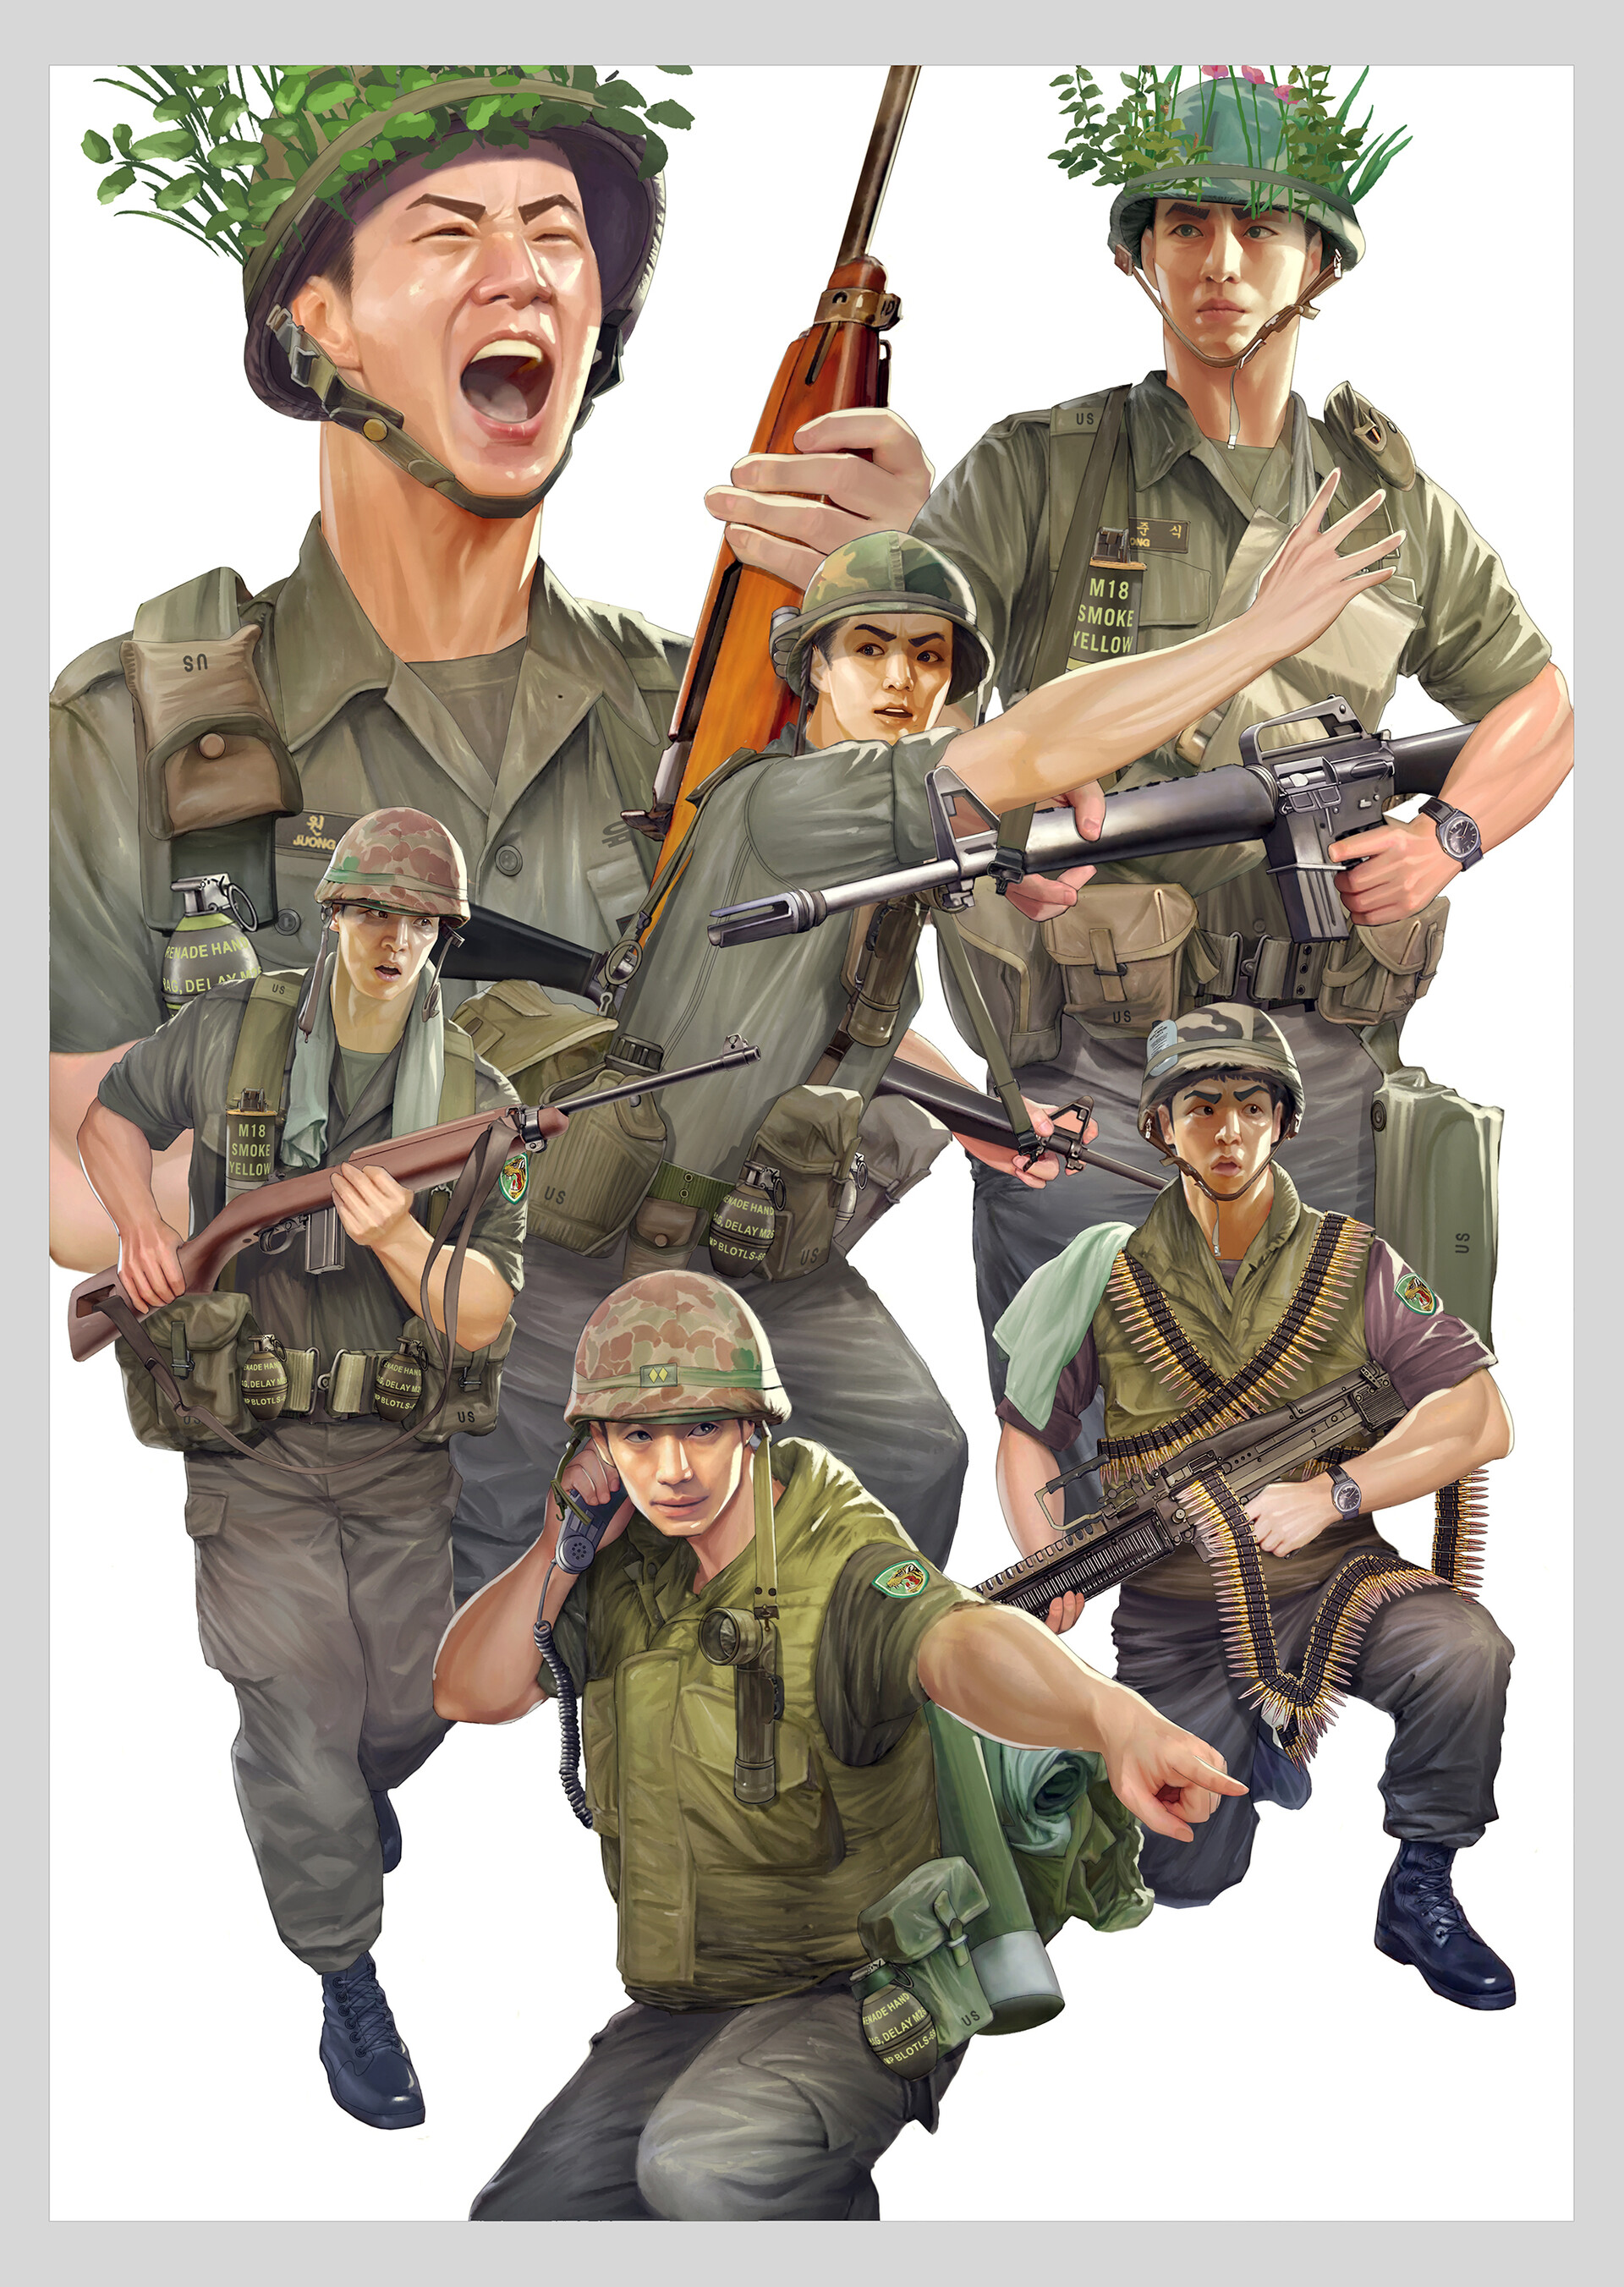 ArtStation - Korean Soldiers in Vietnam War